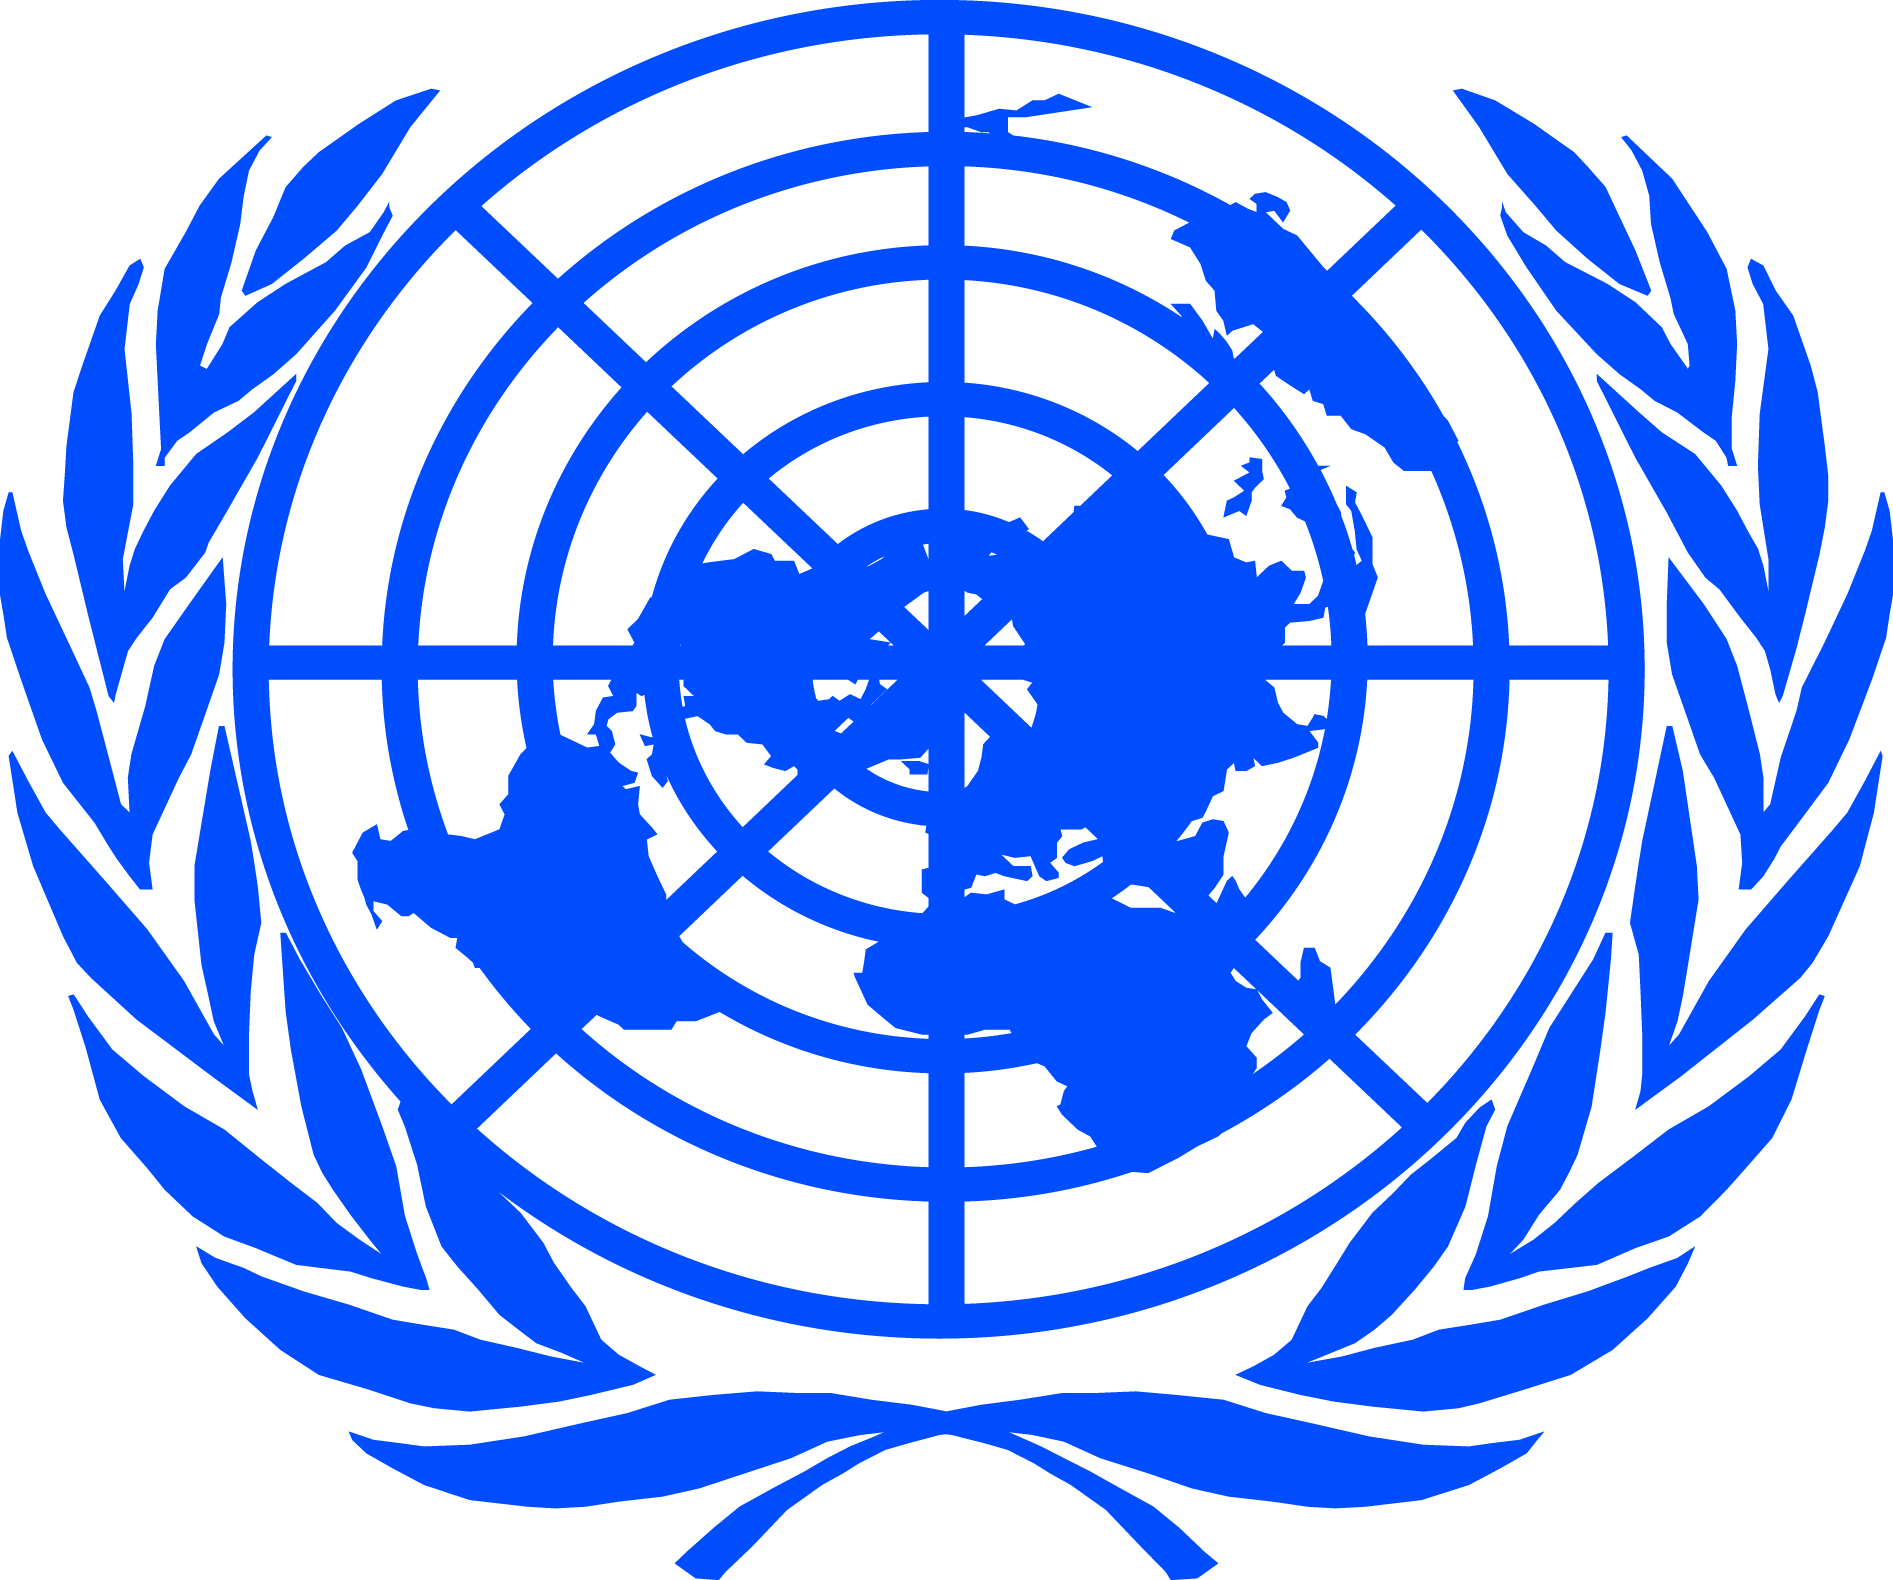 Кодекс оон. Всемирная организация ООН. Международные организации ООН. Организация Объединенных наций (ООН). Совет безопасности ООН флаг.